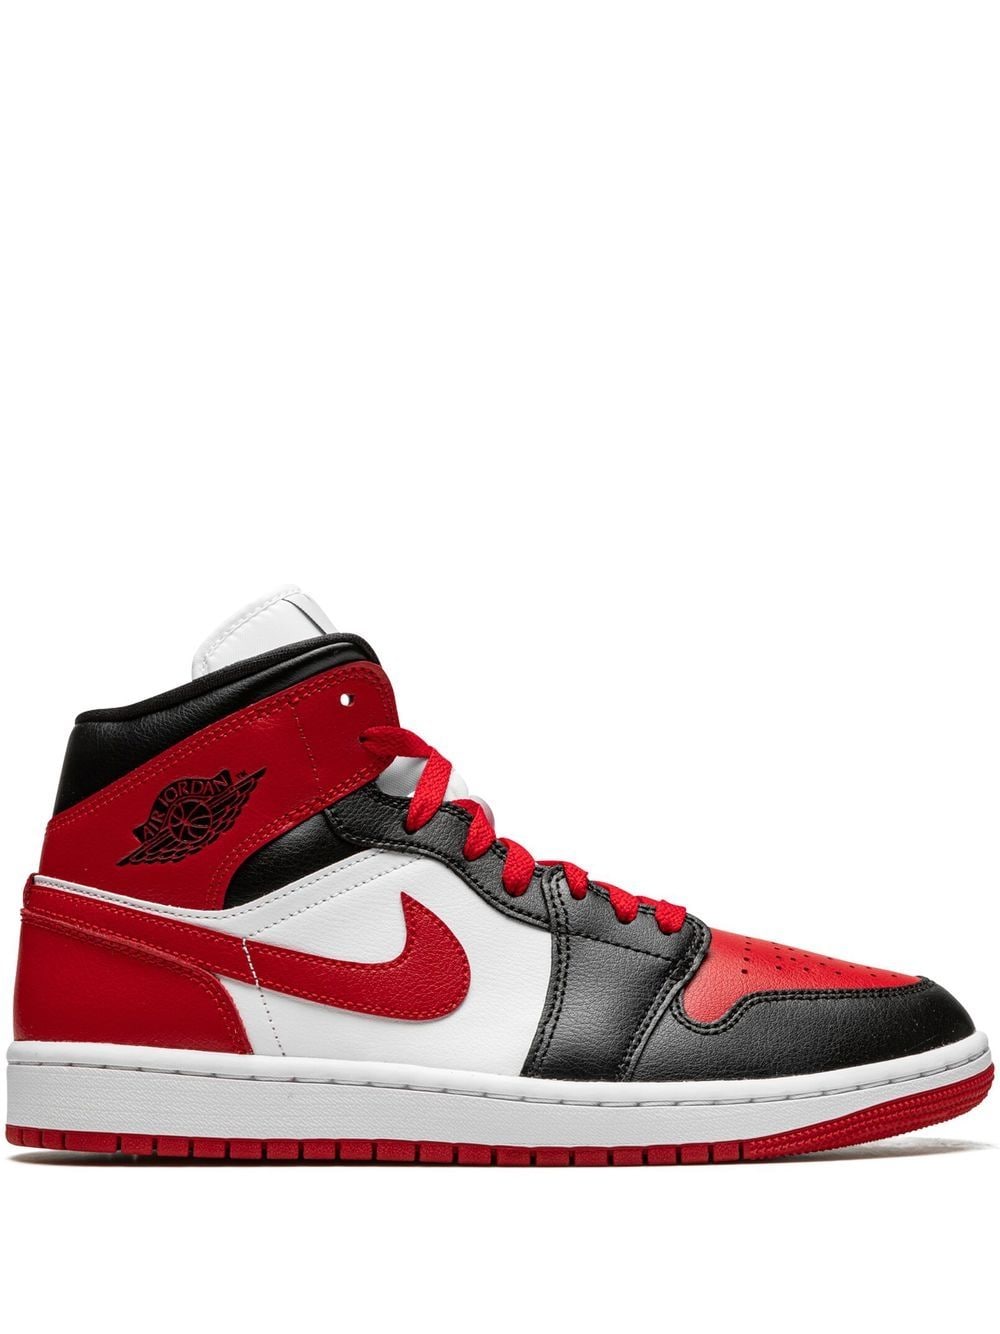 Jordan Air Jordan 1 Mid sneakers - Red